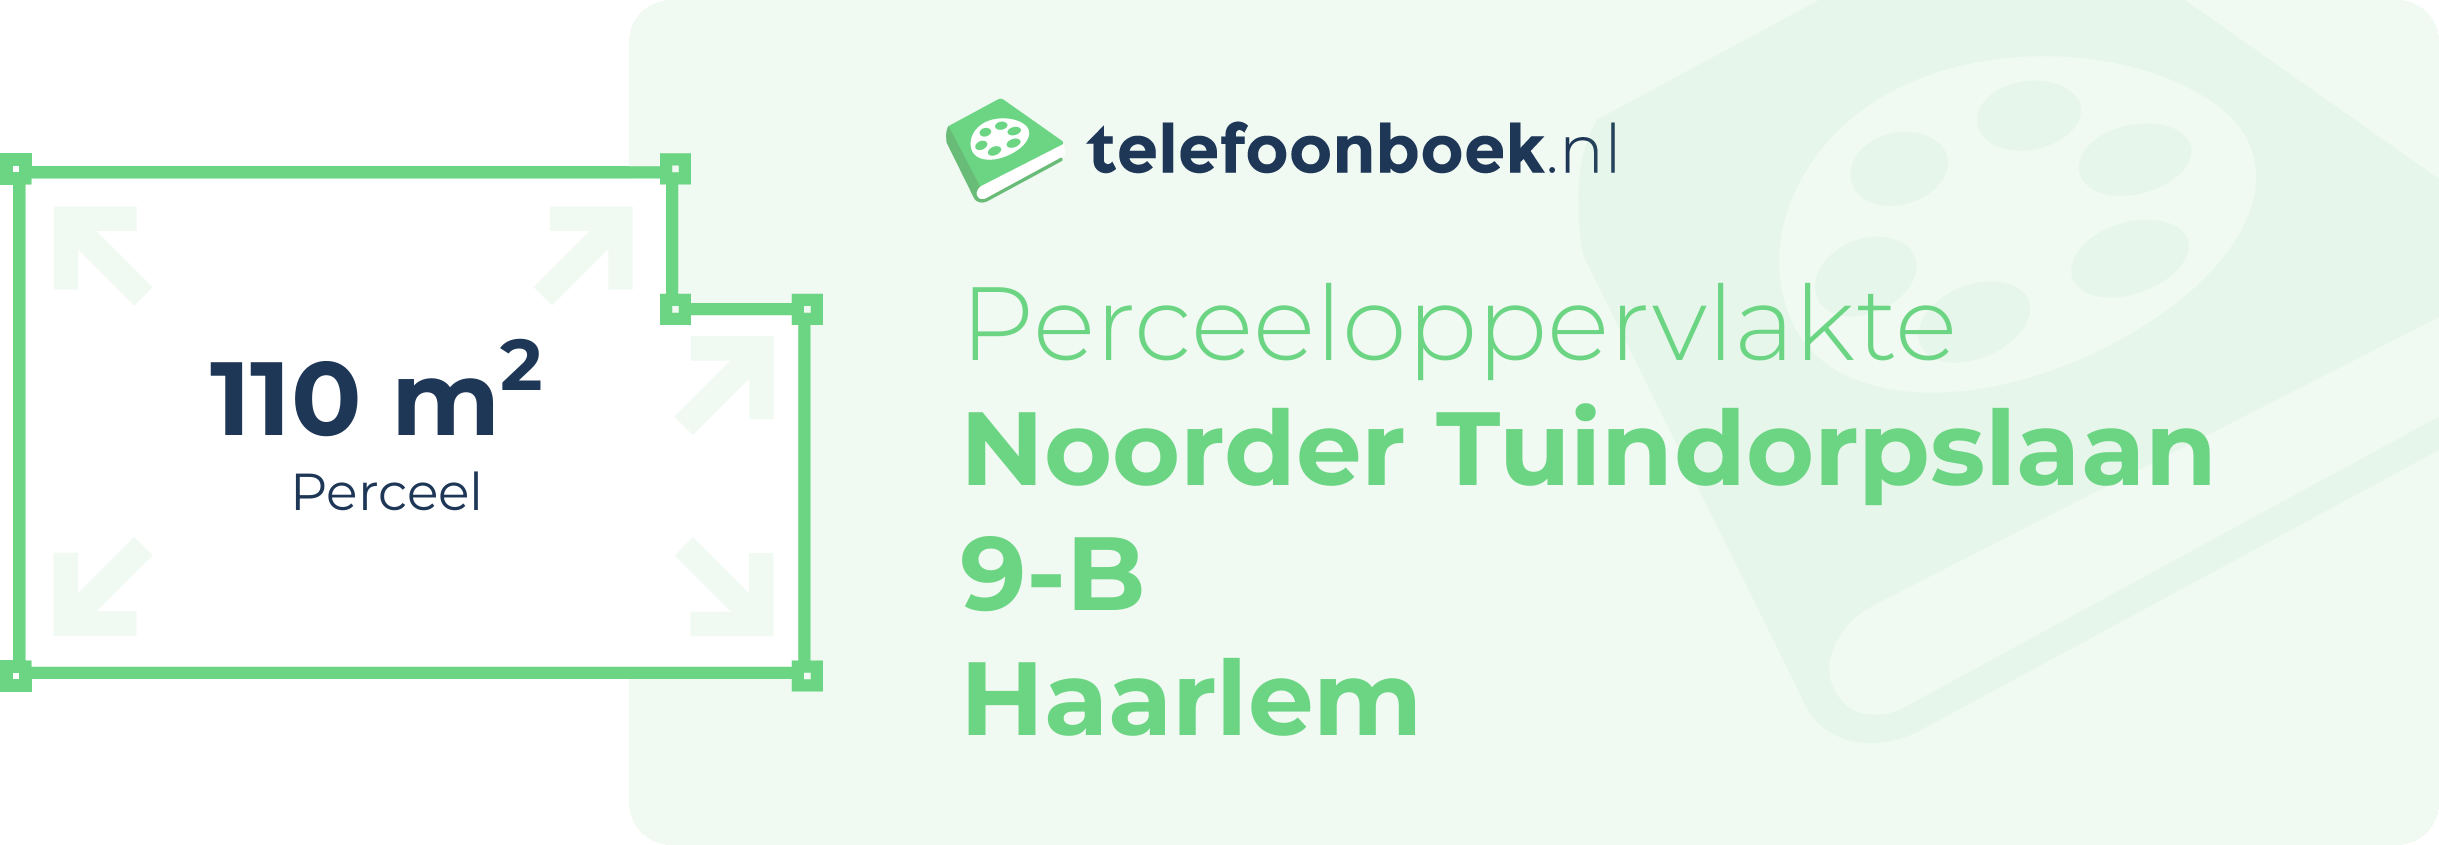 Perceeloppervlakte Noorder Tuindorpslaan 9-B Haarlem